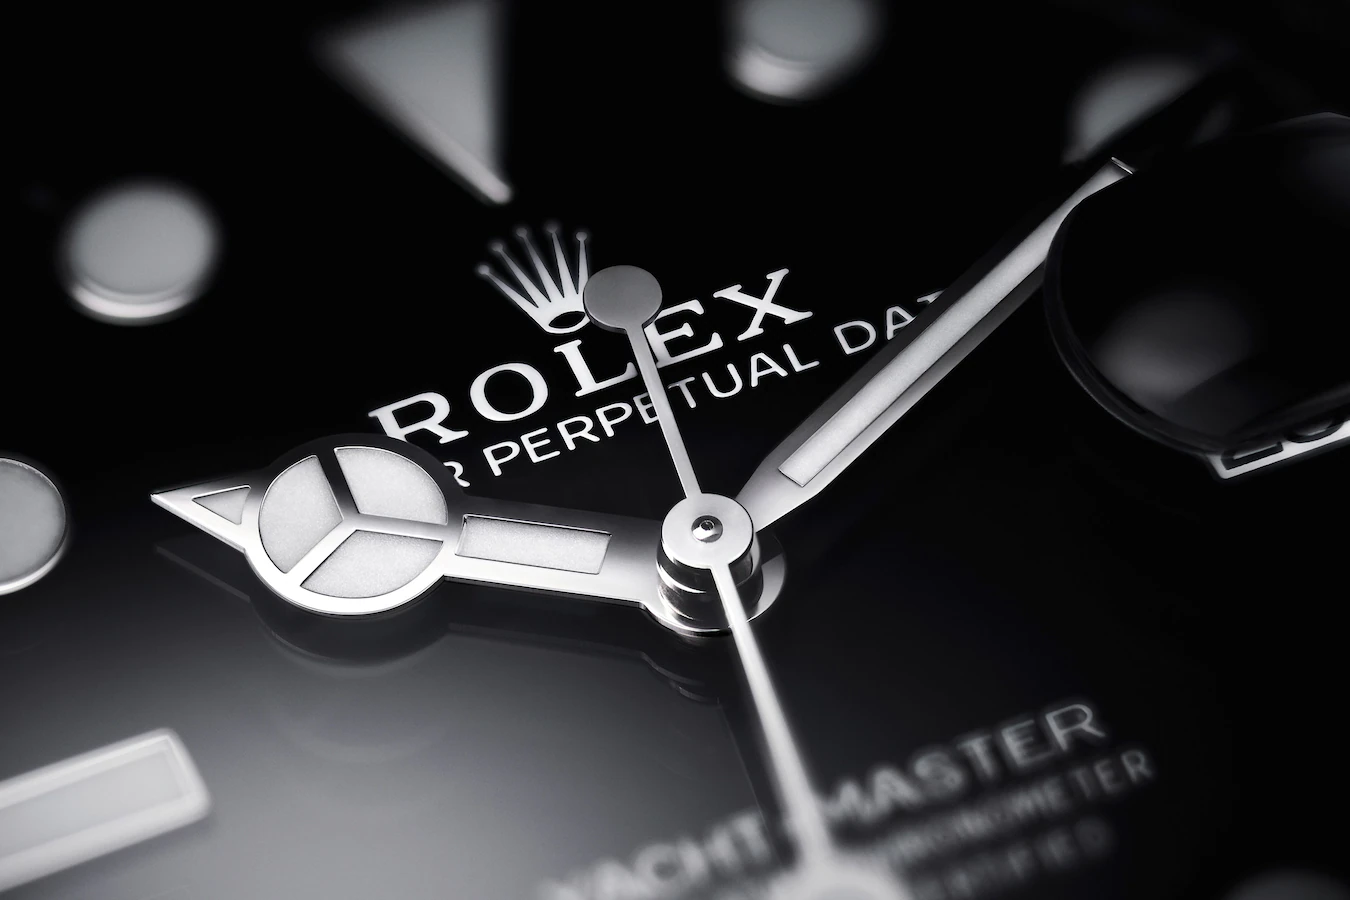 Rolex Yacht-Master 42 watch: 18 kt white gold - m226659-0002